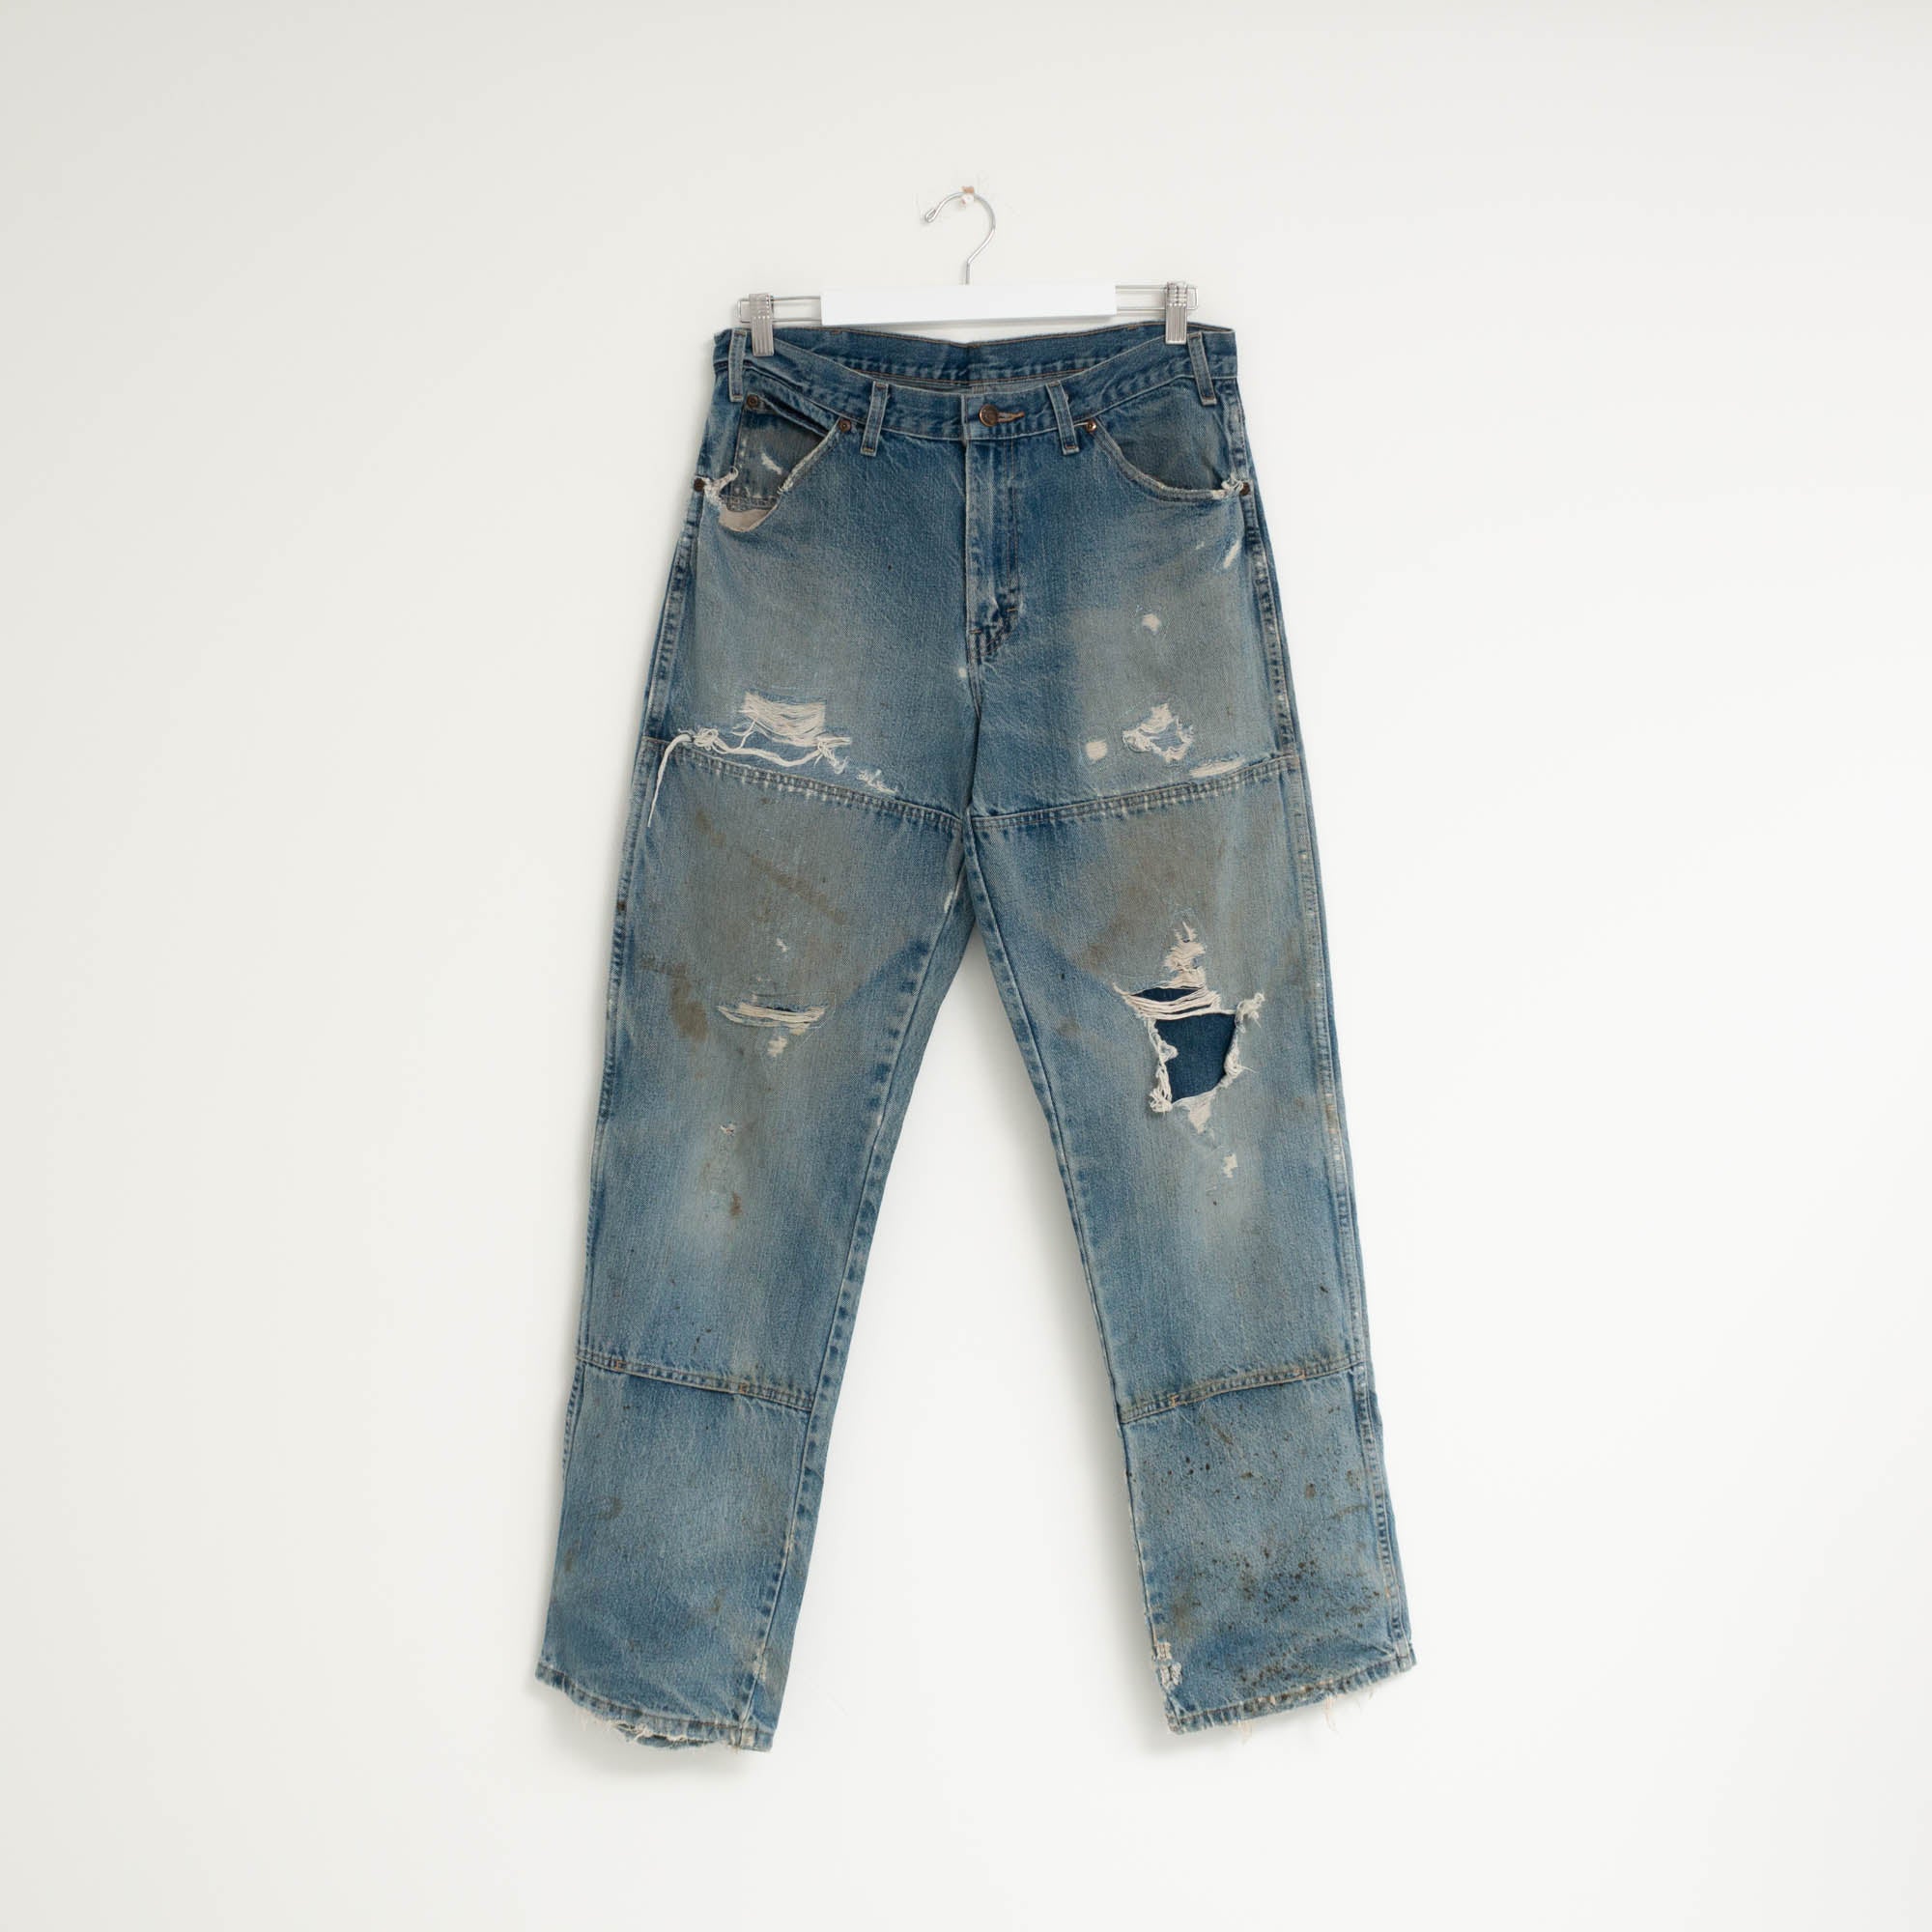 "CARPENTER" Jeans W34 L34